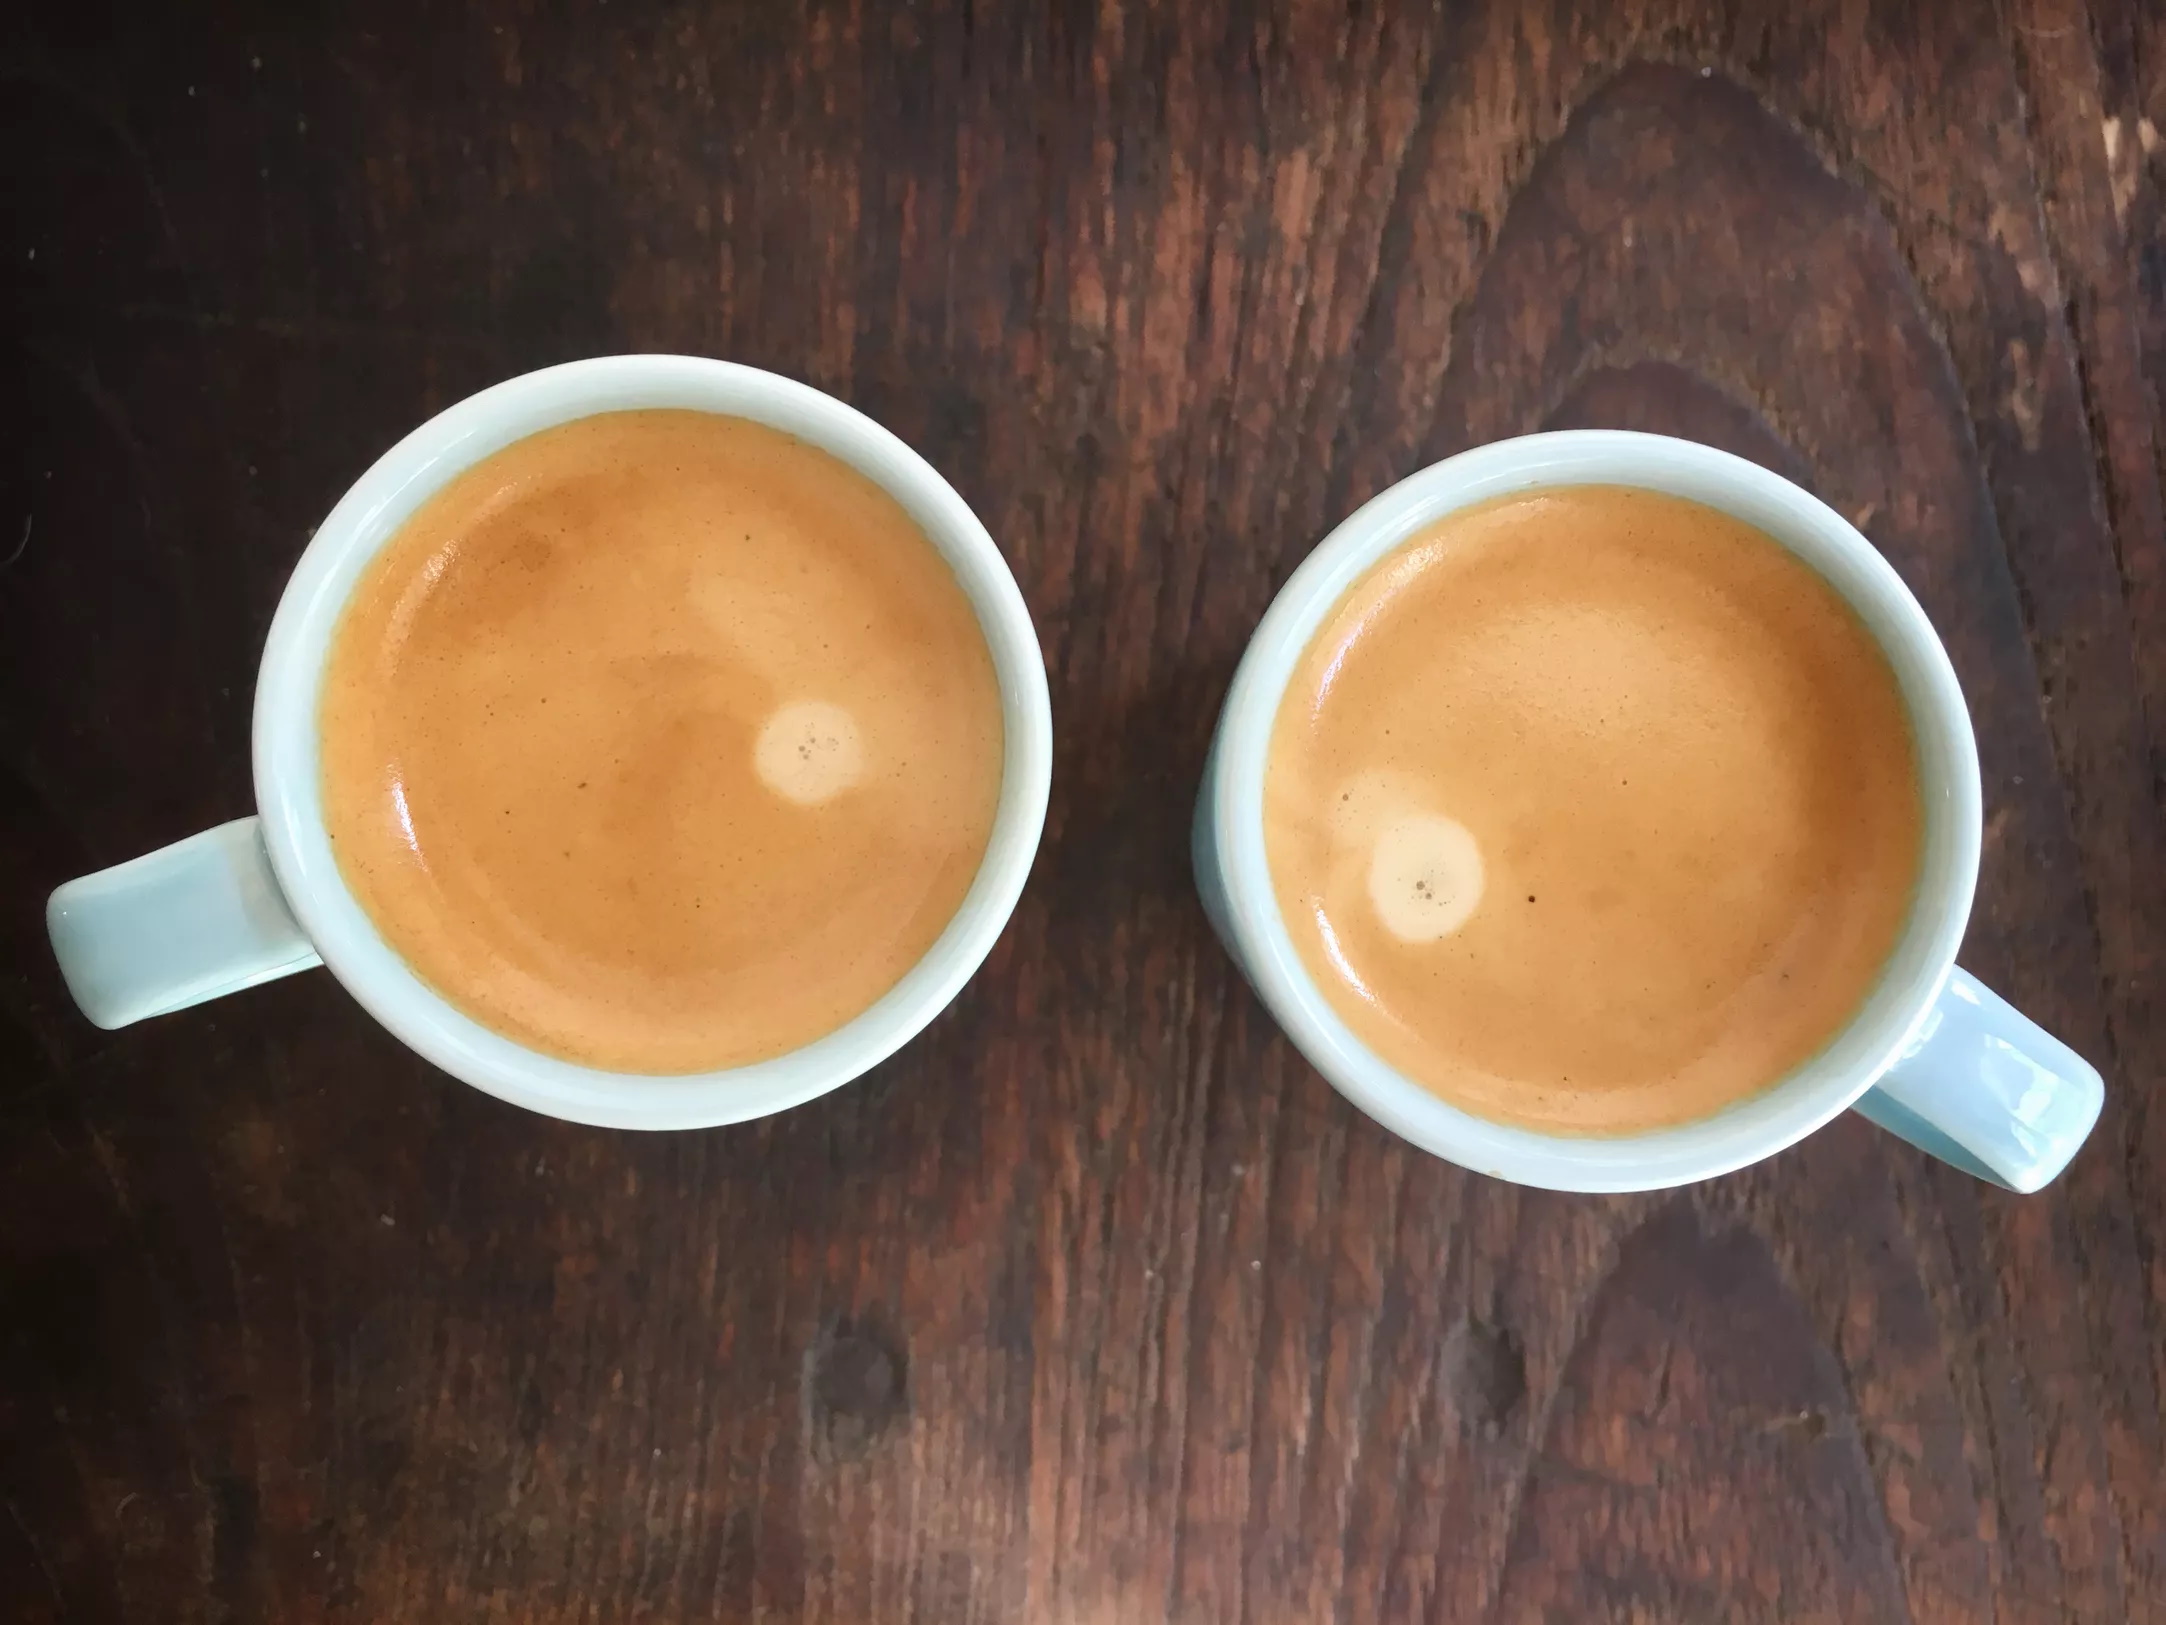 قهوه سازهای متفاوت می توانند نتیجه ای متفاوت در پی داشته باشند. دمای آب بر طعمی که از دانه های قهوه متصاعد می شود تاثیر گذار خواهد بود